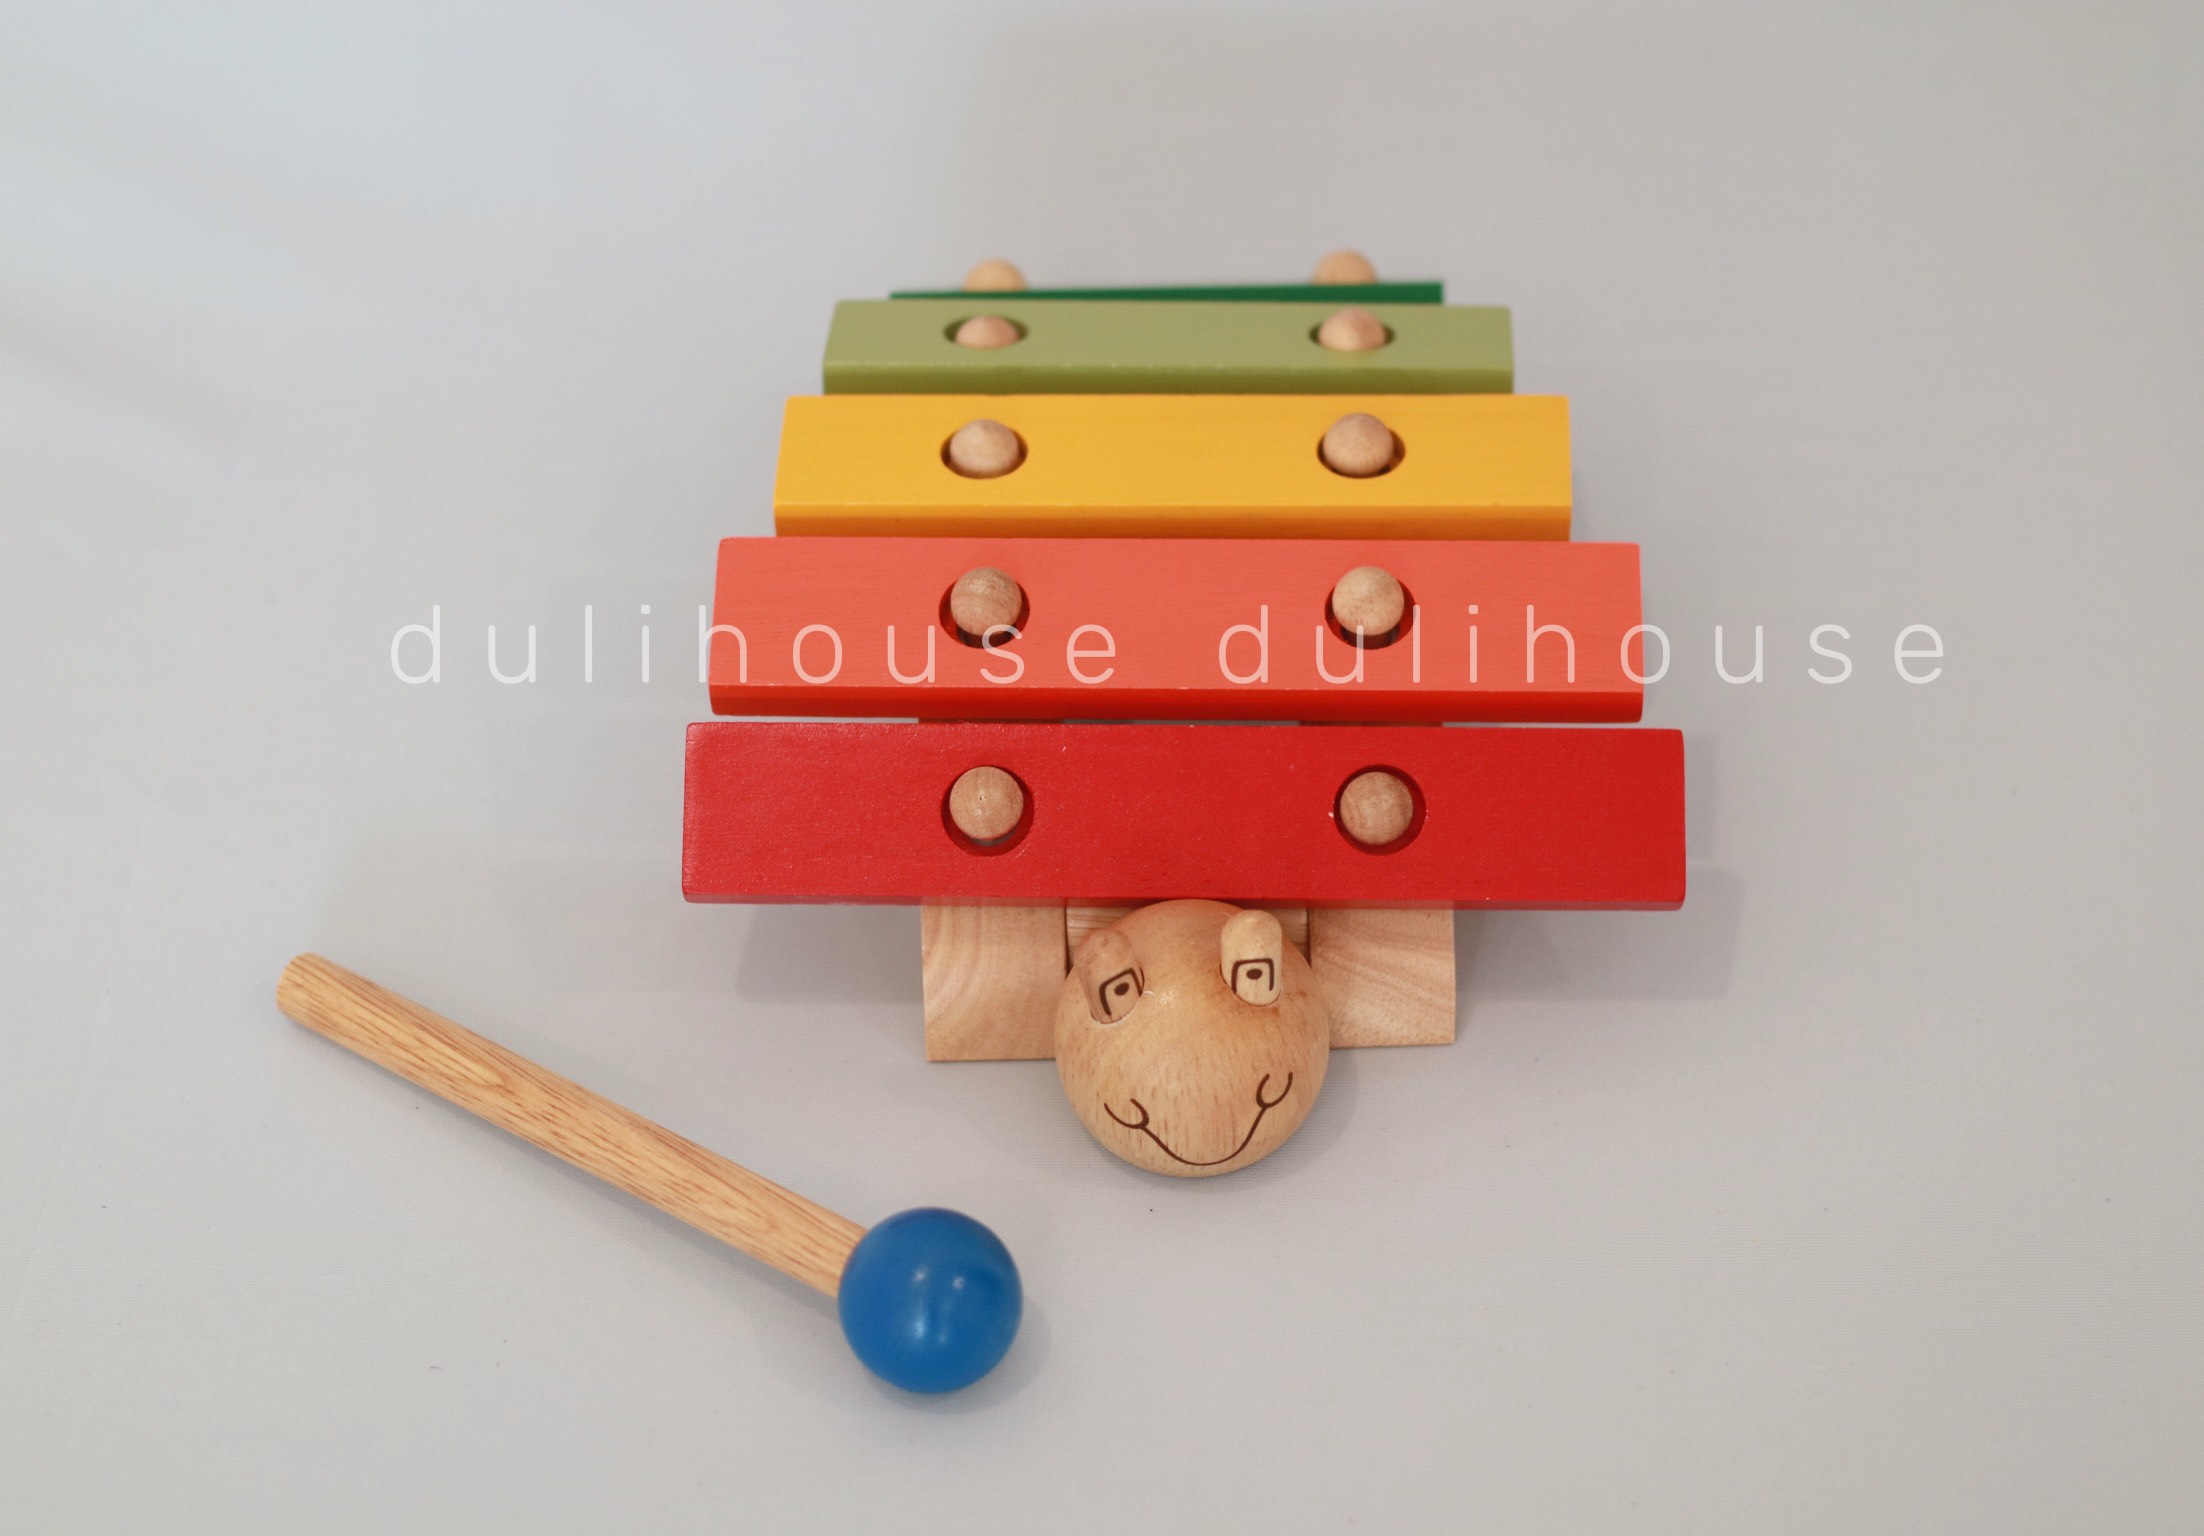 Đồ chơi gỗ cao cấp Đàn hình rùa, giúp bé phân biệt được các màu sắc cơ bản, phát triển trí não, tâm hồn một cách toàn diện, kết hợp tốt giữa tay và mắt, tạo sự khéo léo, nhanh nhẹn - Sản xuất tại Việt Nam